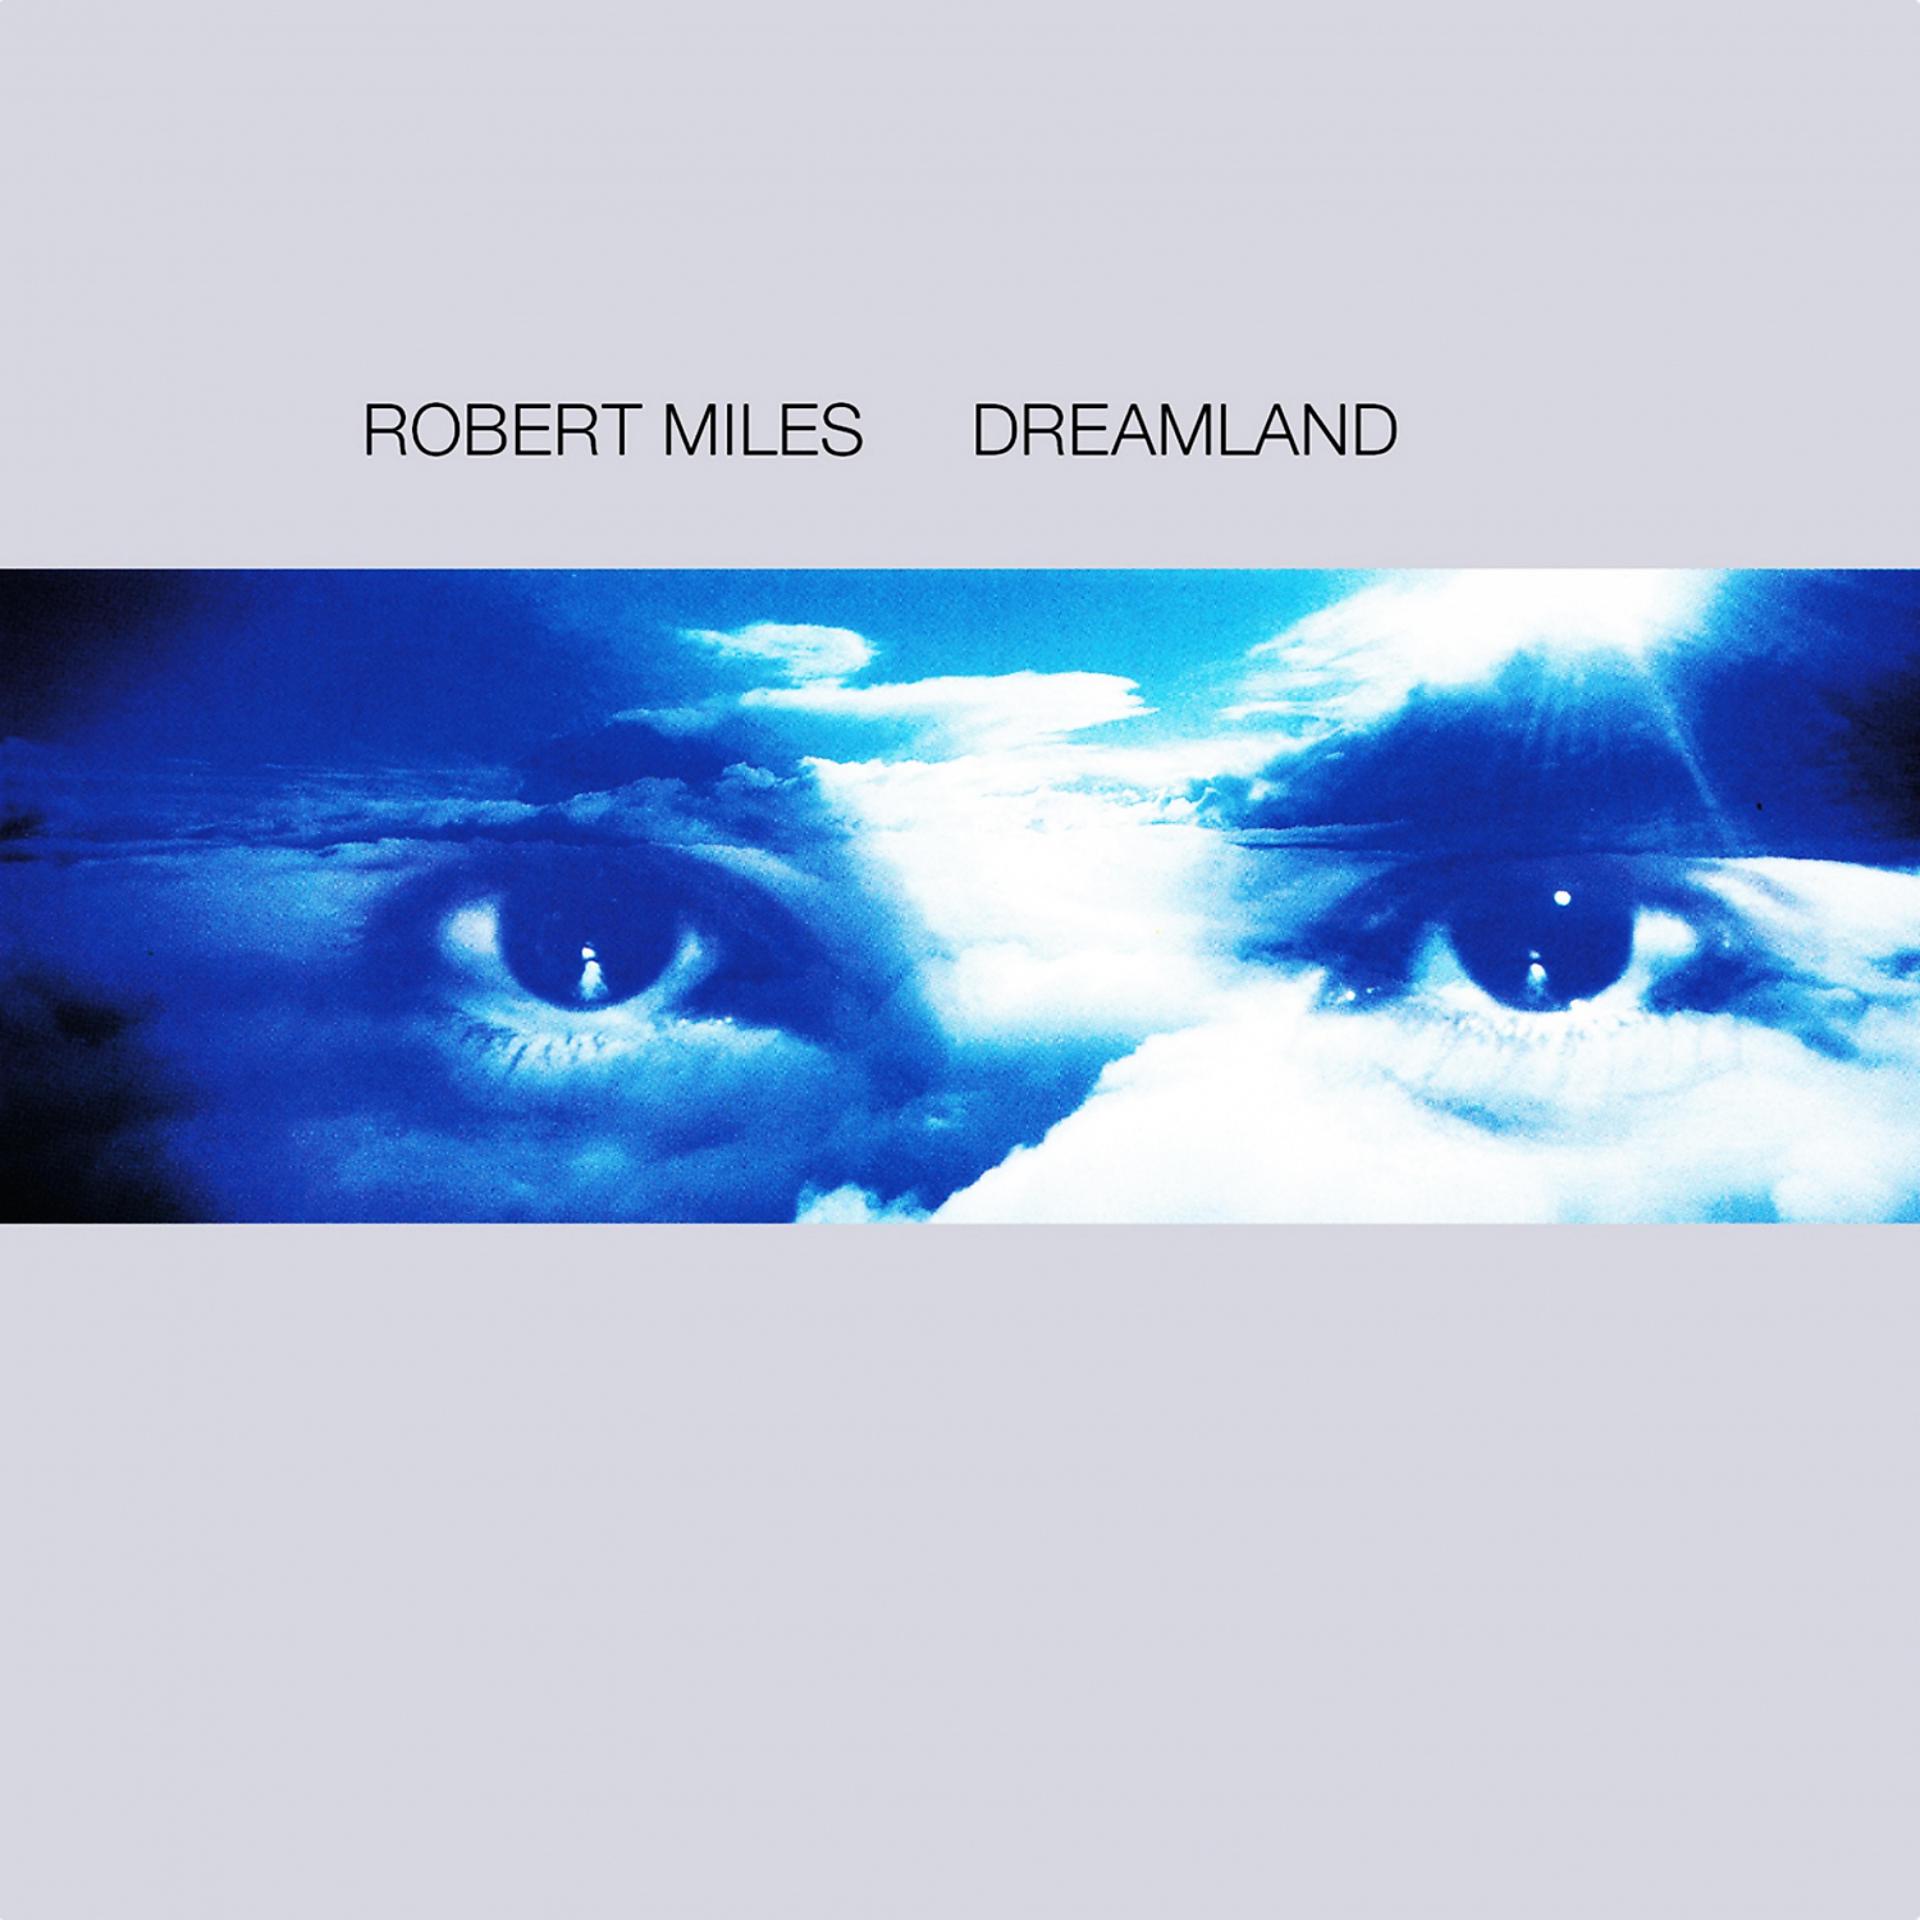 Miles dreamland. Robert Miles children 1996. Robert Miles Dreamland 1996. Robert Miles - Dreamland (1996) компакт диск.